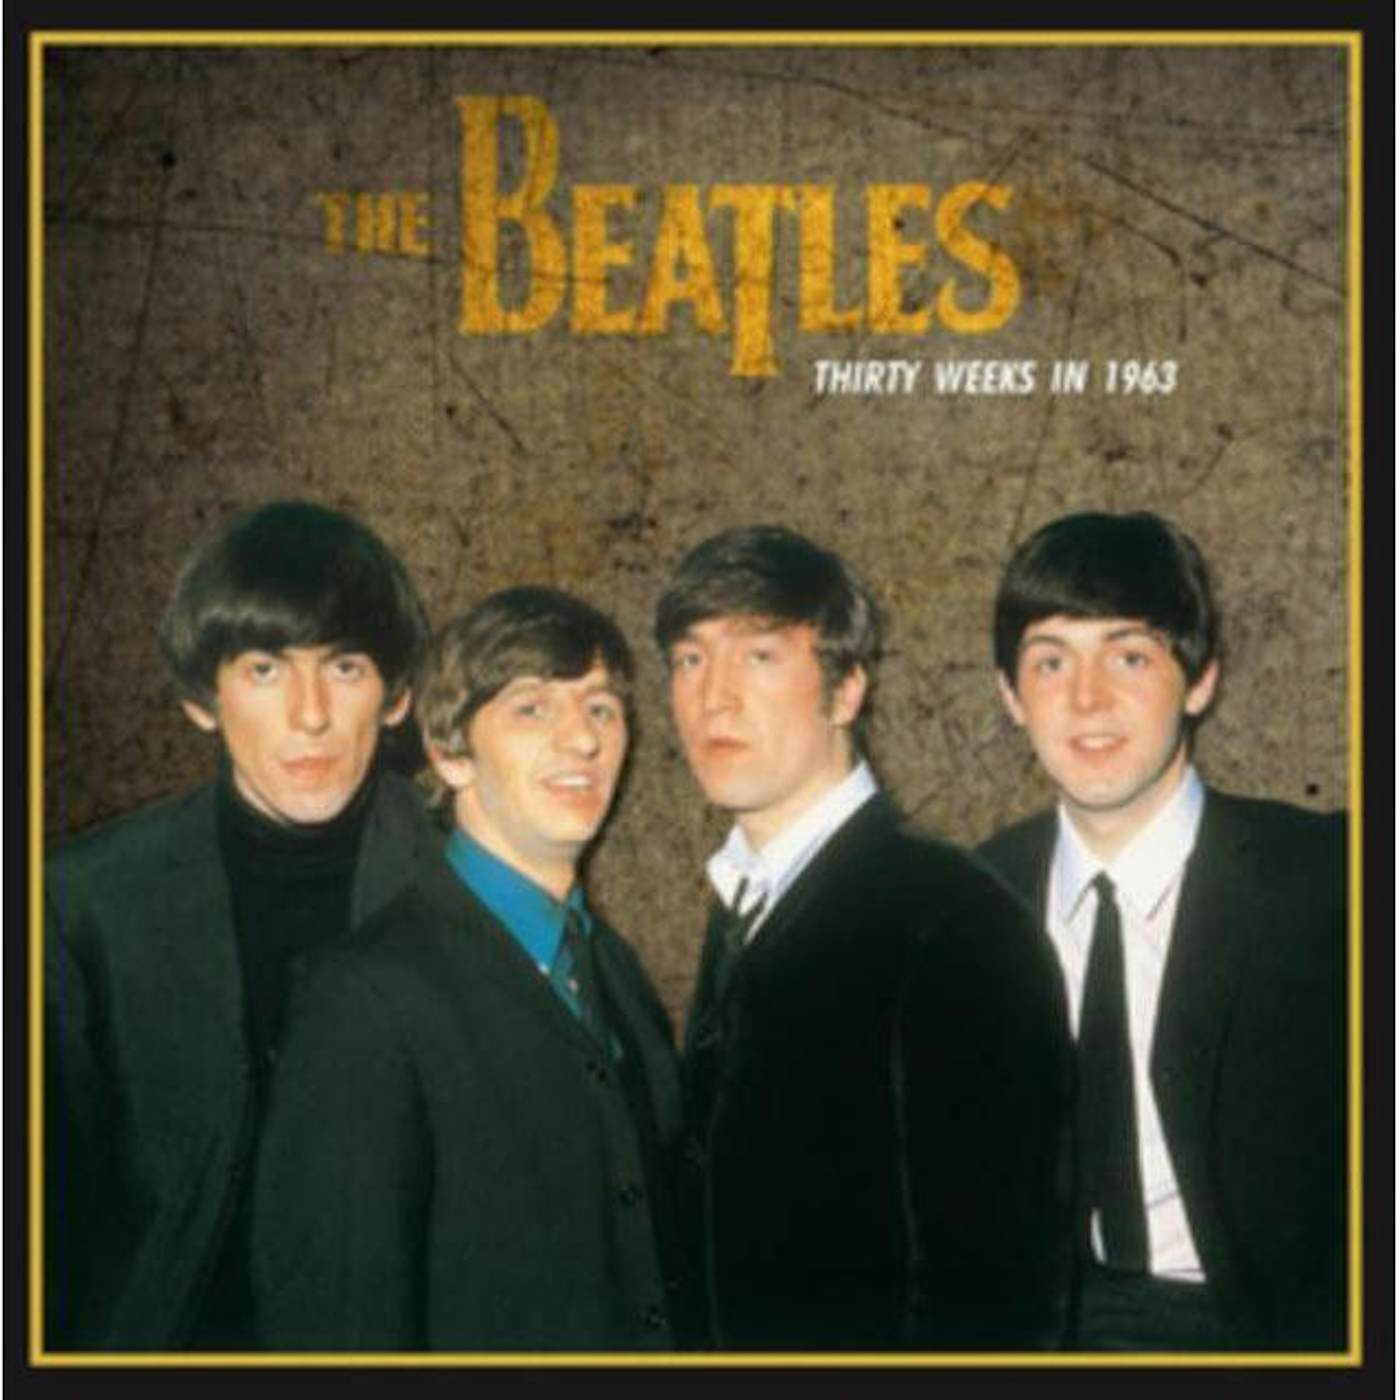 The Beatles  LP Vinyl Record - Thirty Weeks In 19 63